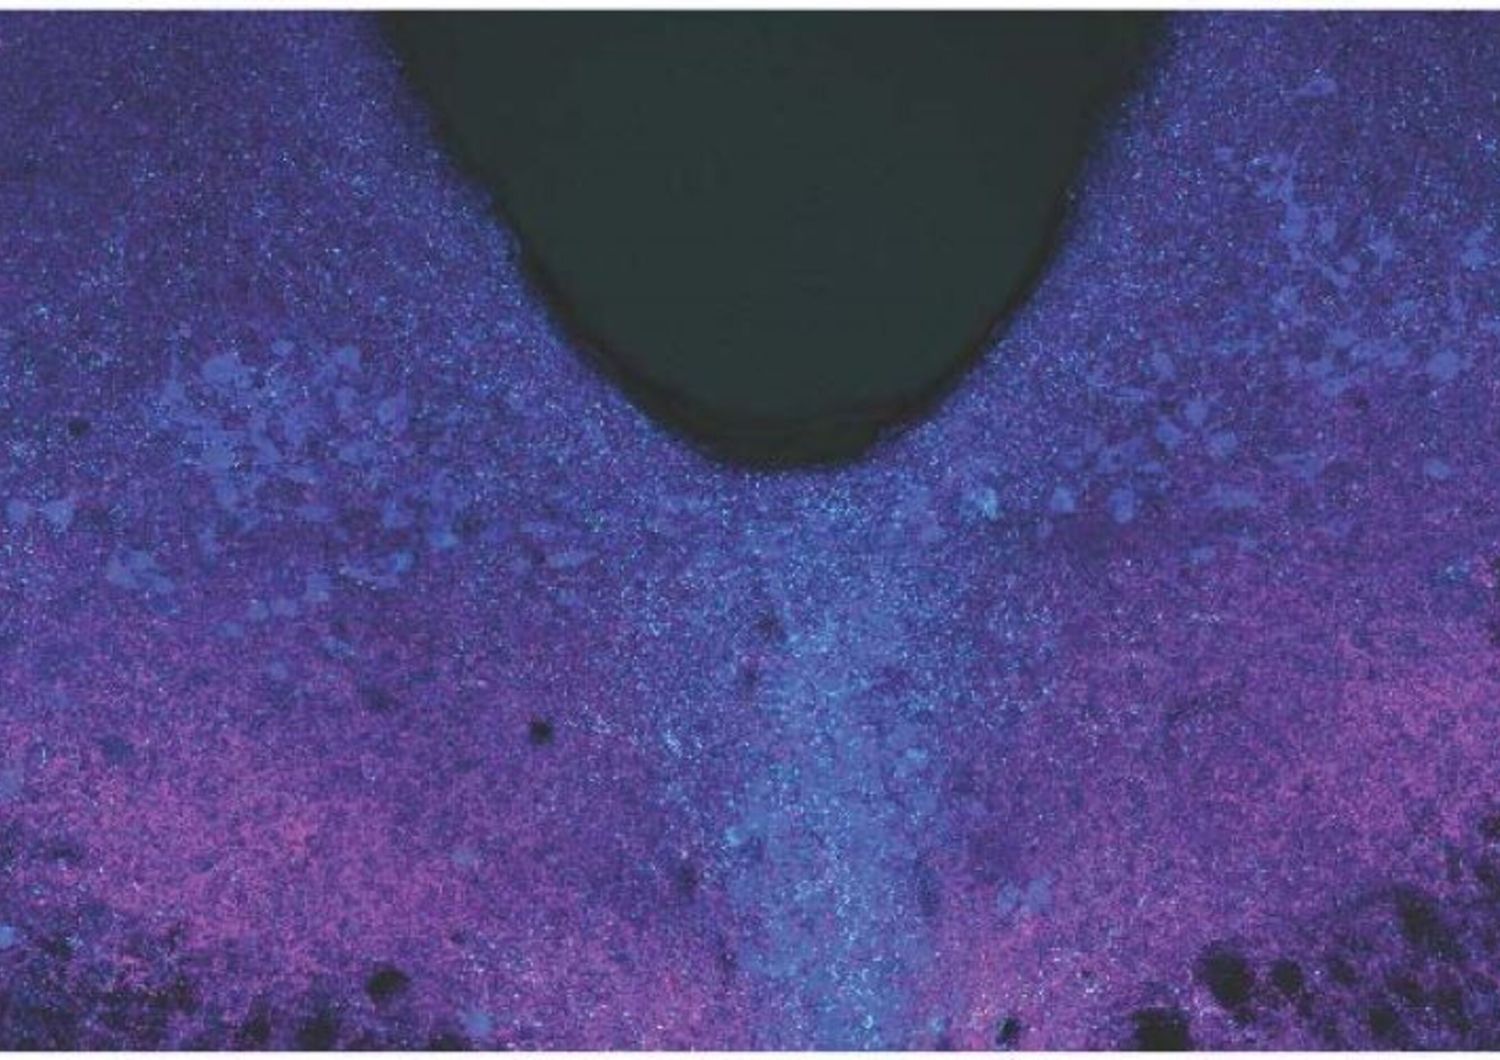 L’area dorsale del rafe del cervello viene ripresa mediante microscopia confocale